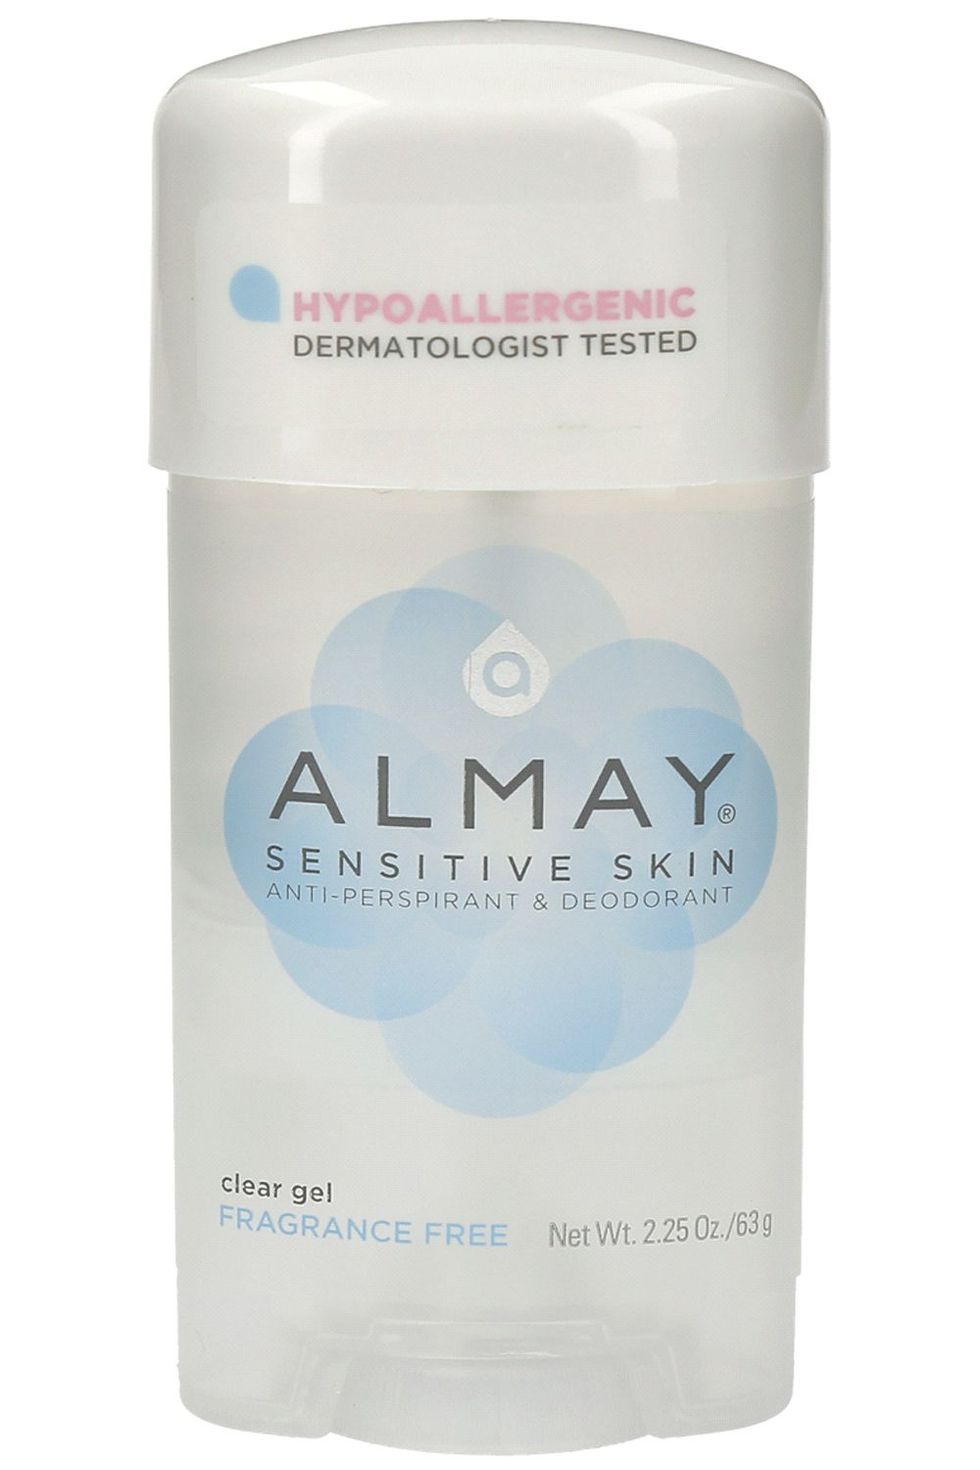 Almay Sensitive Skin Anti-Perspirant & Deodorant Clear Gel